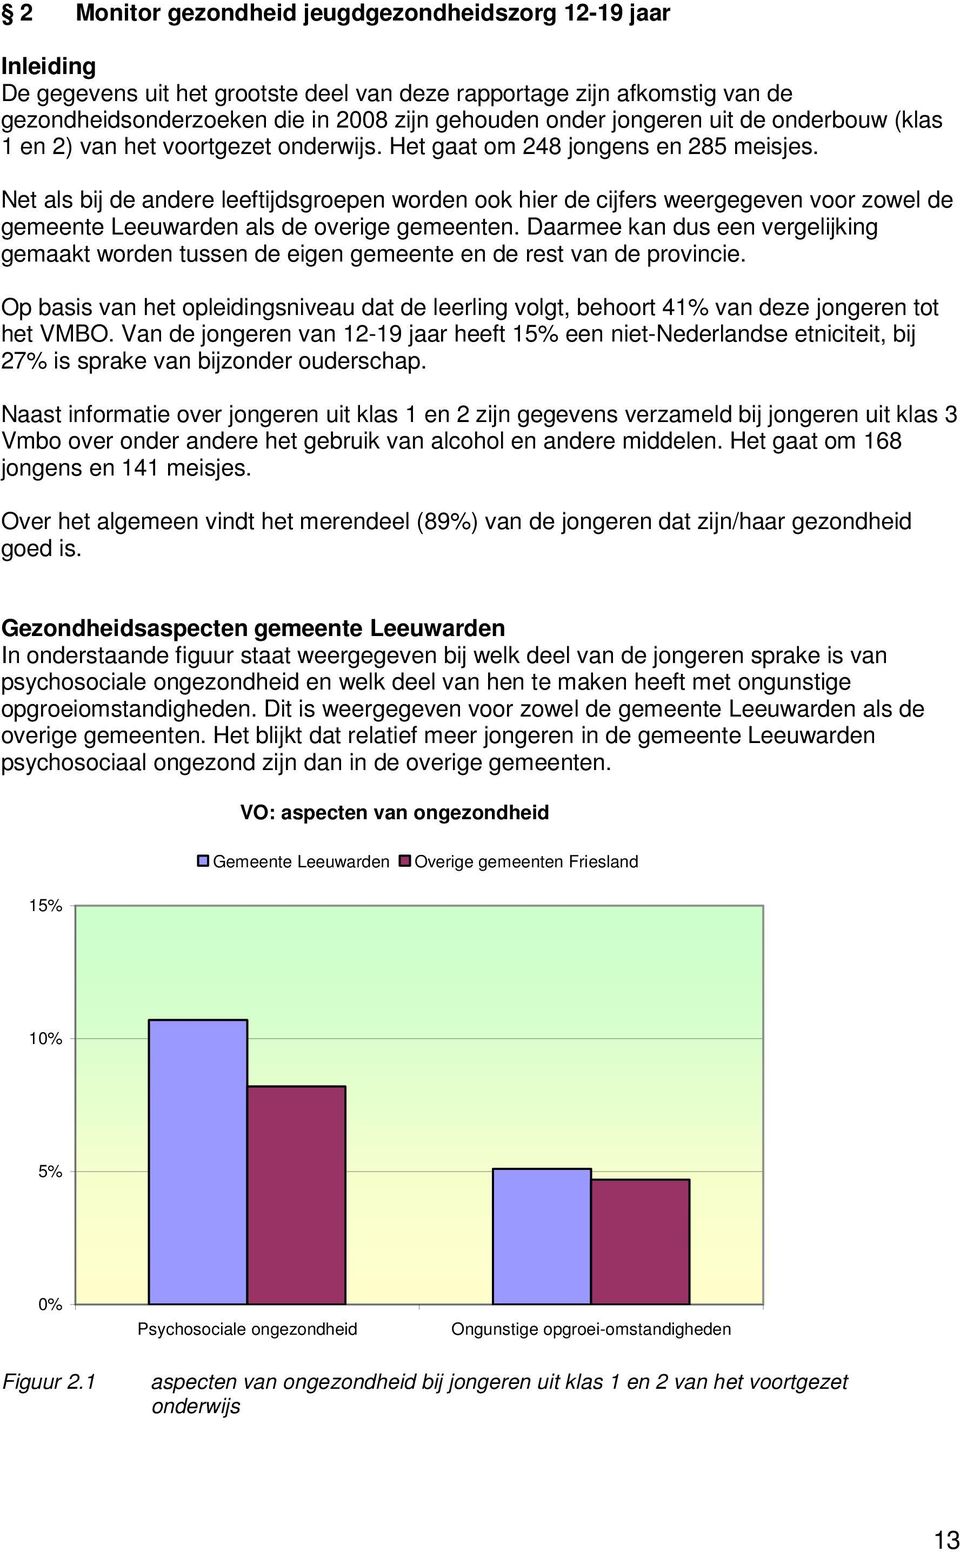 Net als bij de andere leeftijdsgroepen worden ook hier de cijfers weergegeven voor zowel de gemeente Leeuwarden als de overige gemeenten.